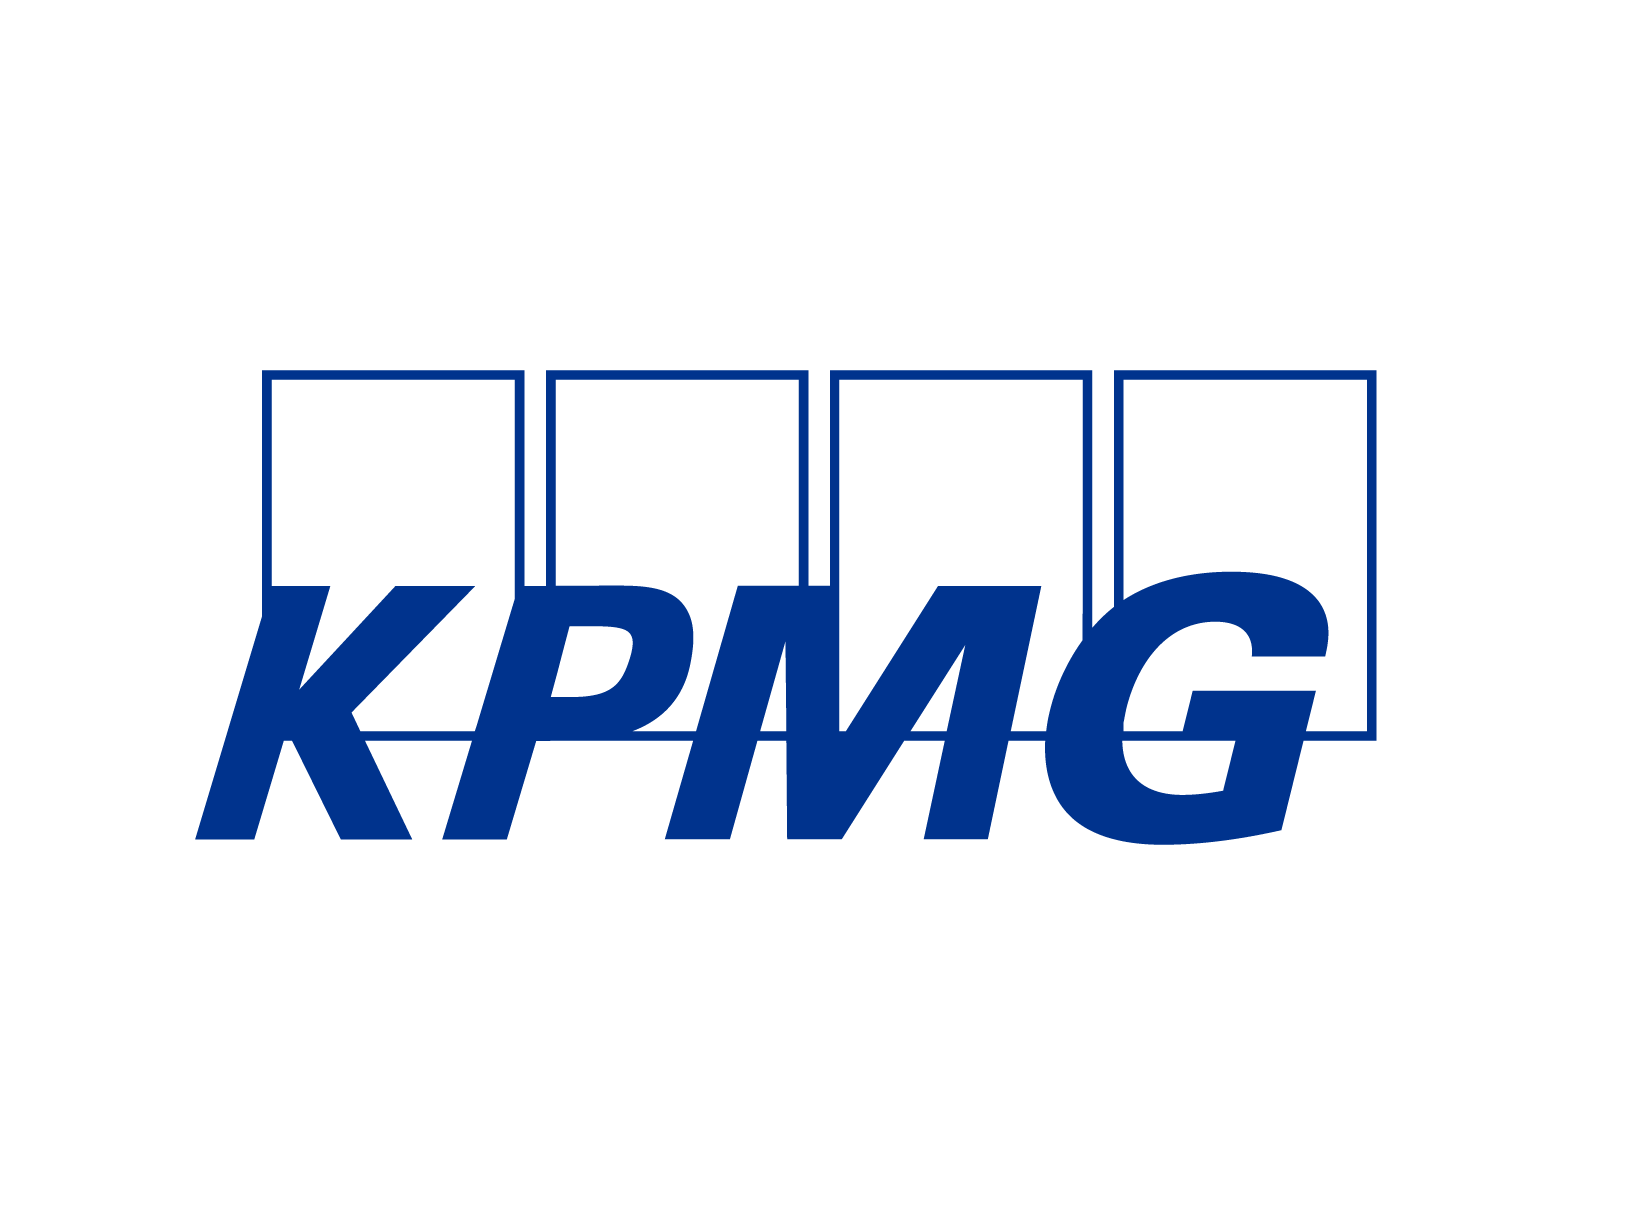 kpmg:n logo, joka on samalla linkki